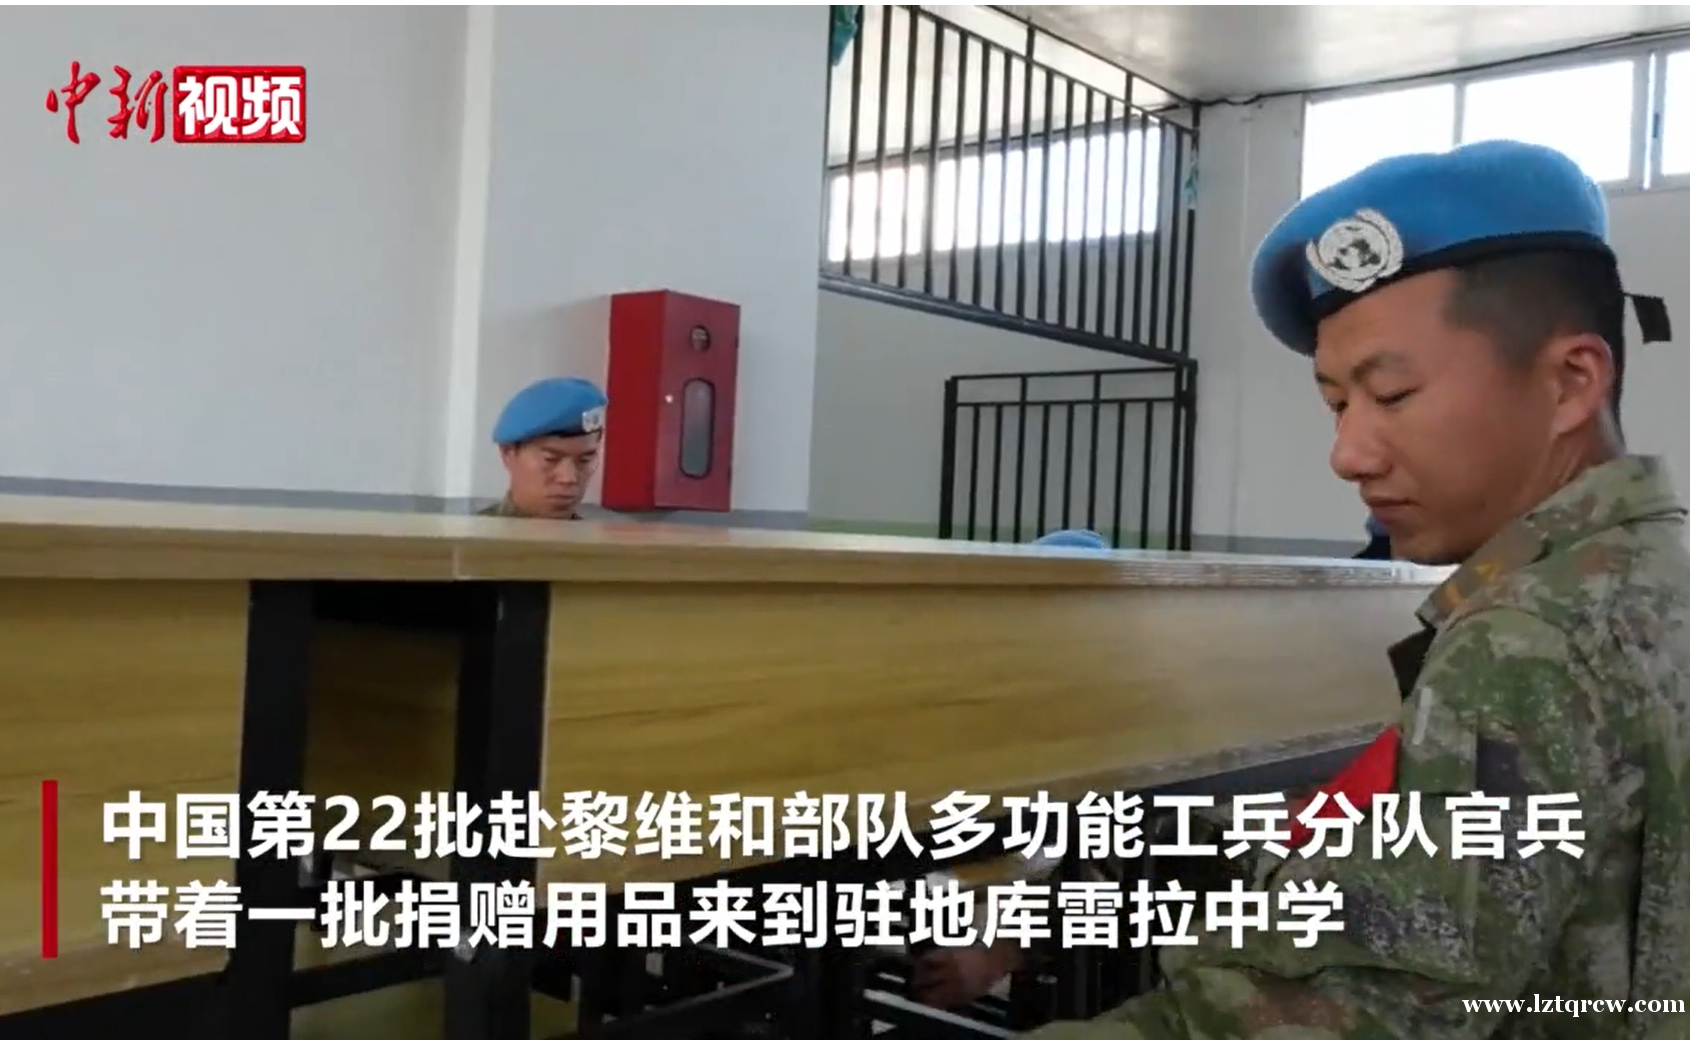 中国赴黎维和部队官兵在驻地中学开展文化交流活动